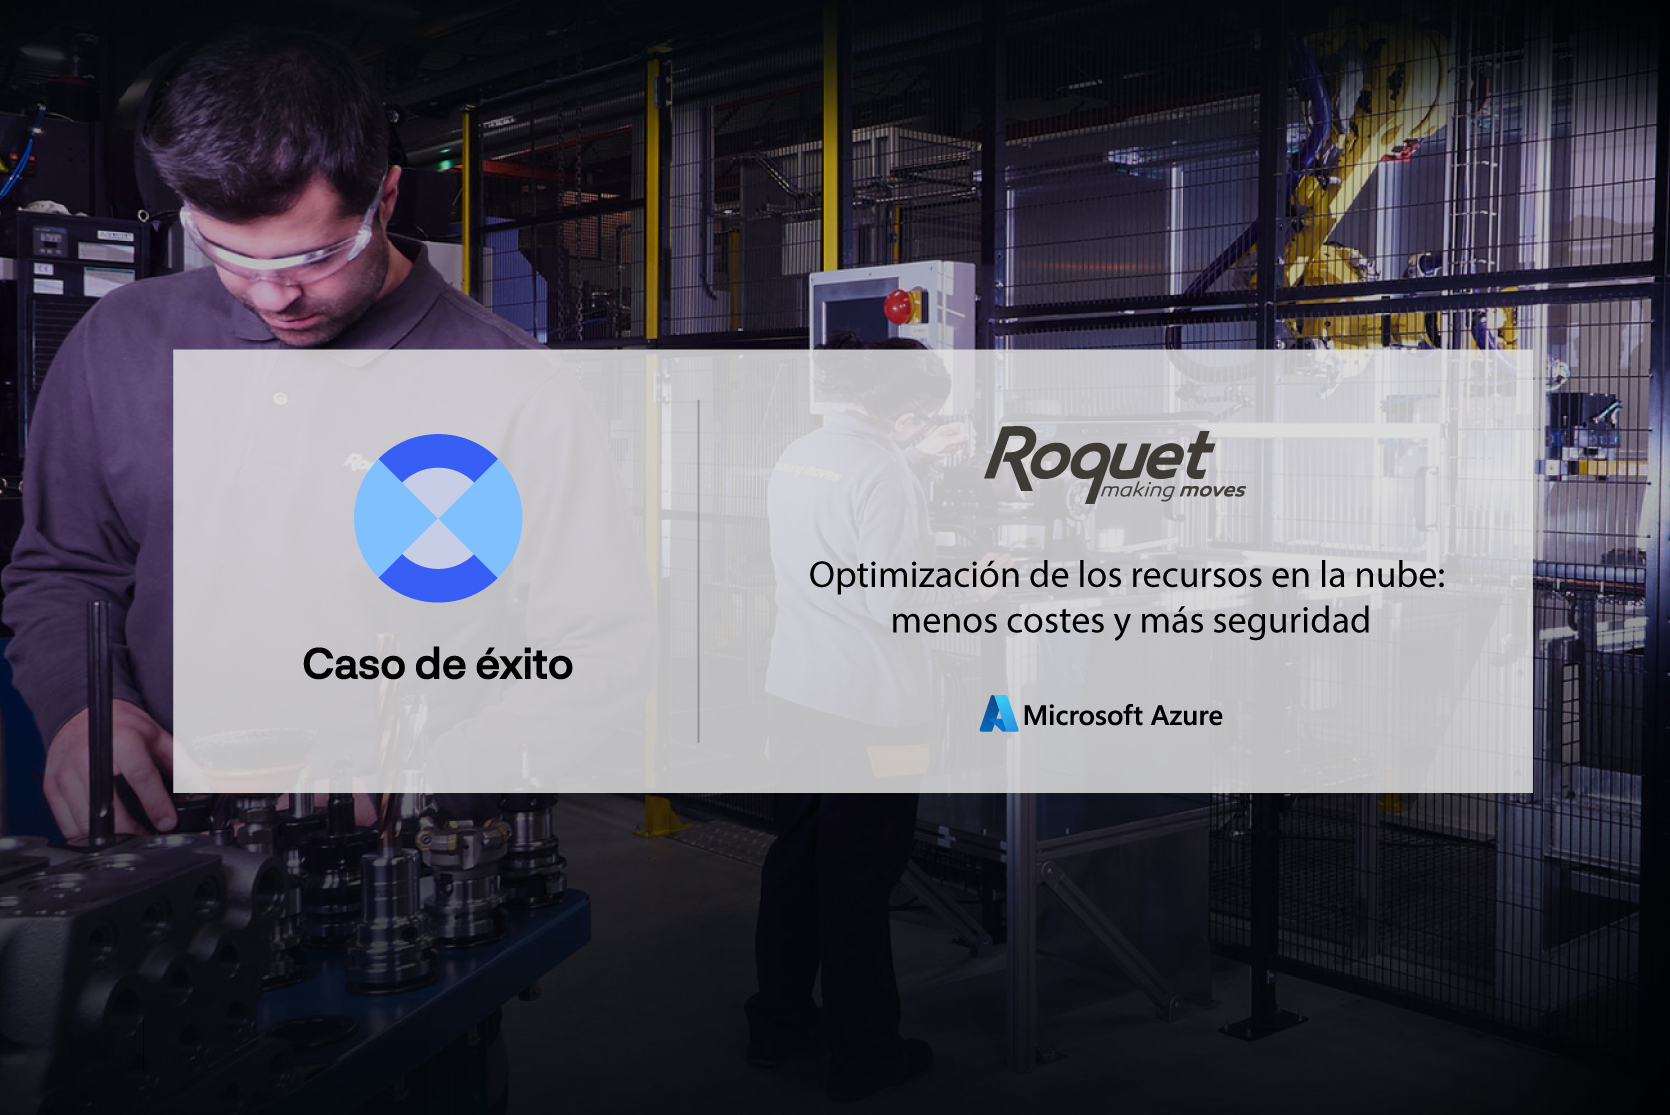 Imagen de dos operarios de Roquet con el mensaje sobreimpreso: Optimización de los recursos en la nube: menos coste y más seguridad